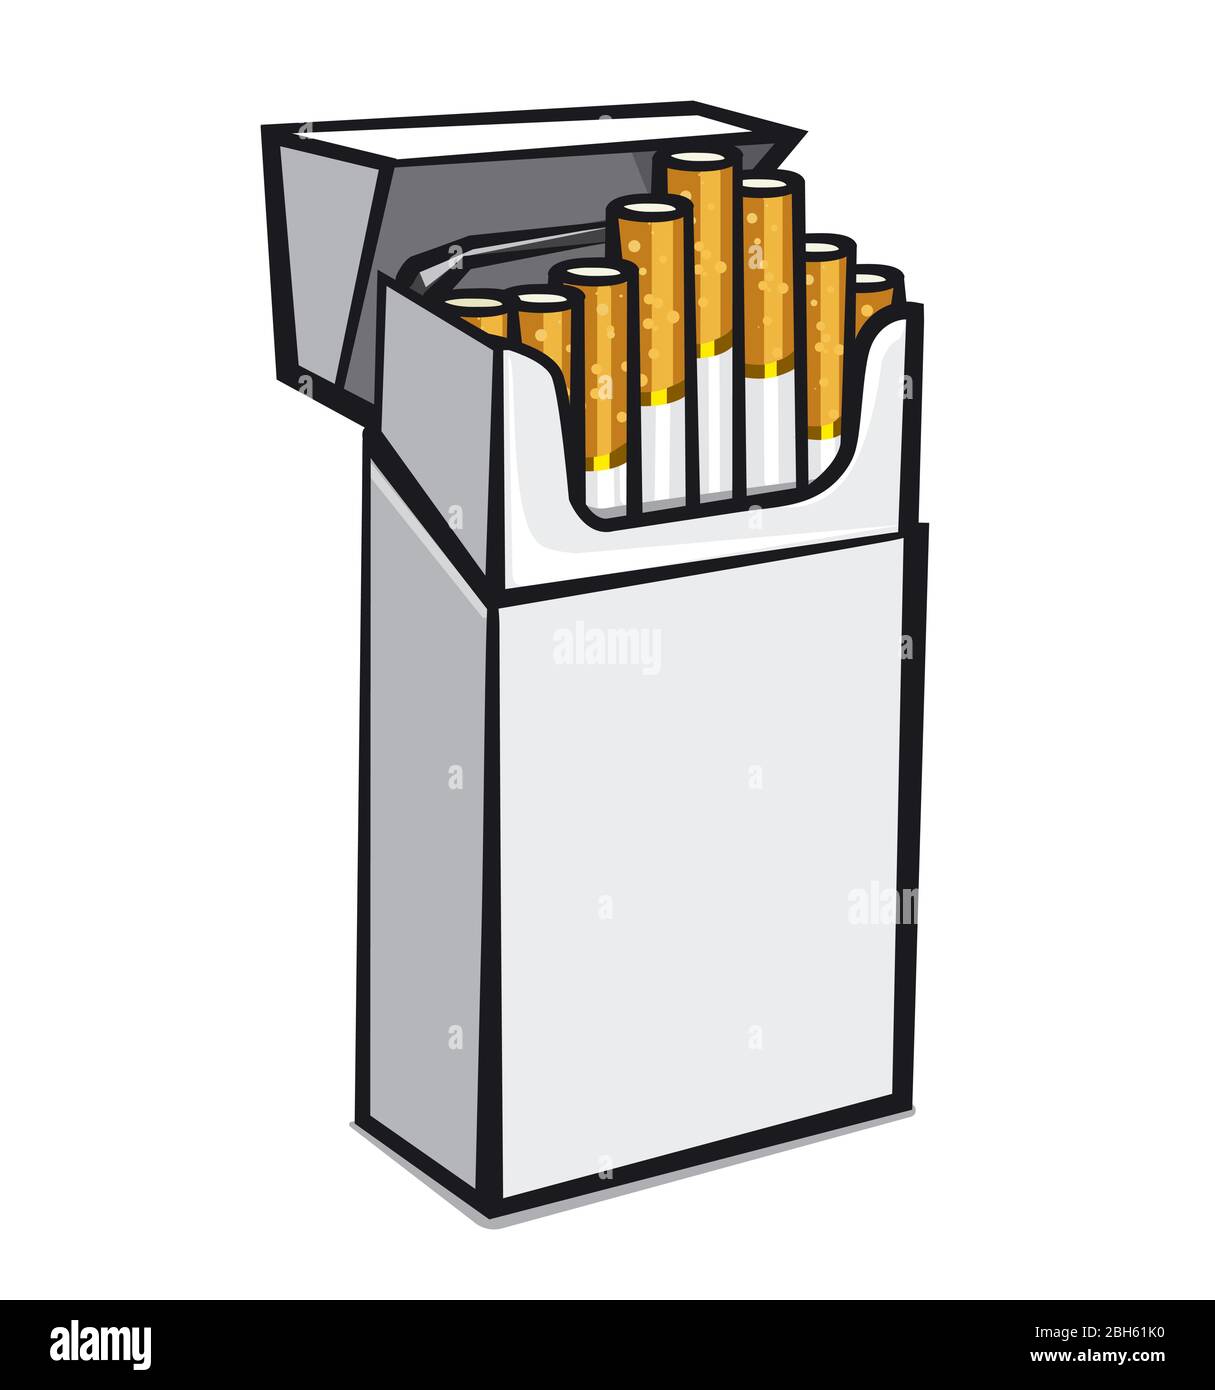 illustration de l'emballage ouvert des cigarettes sur fond blanc Illustration de Vecteur